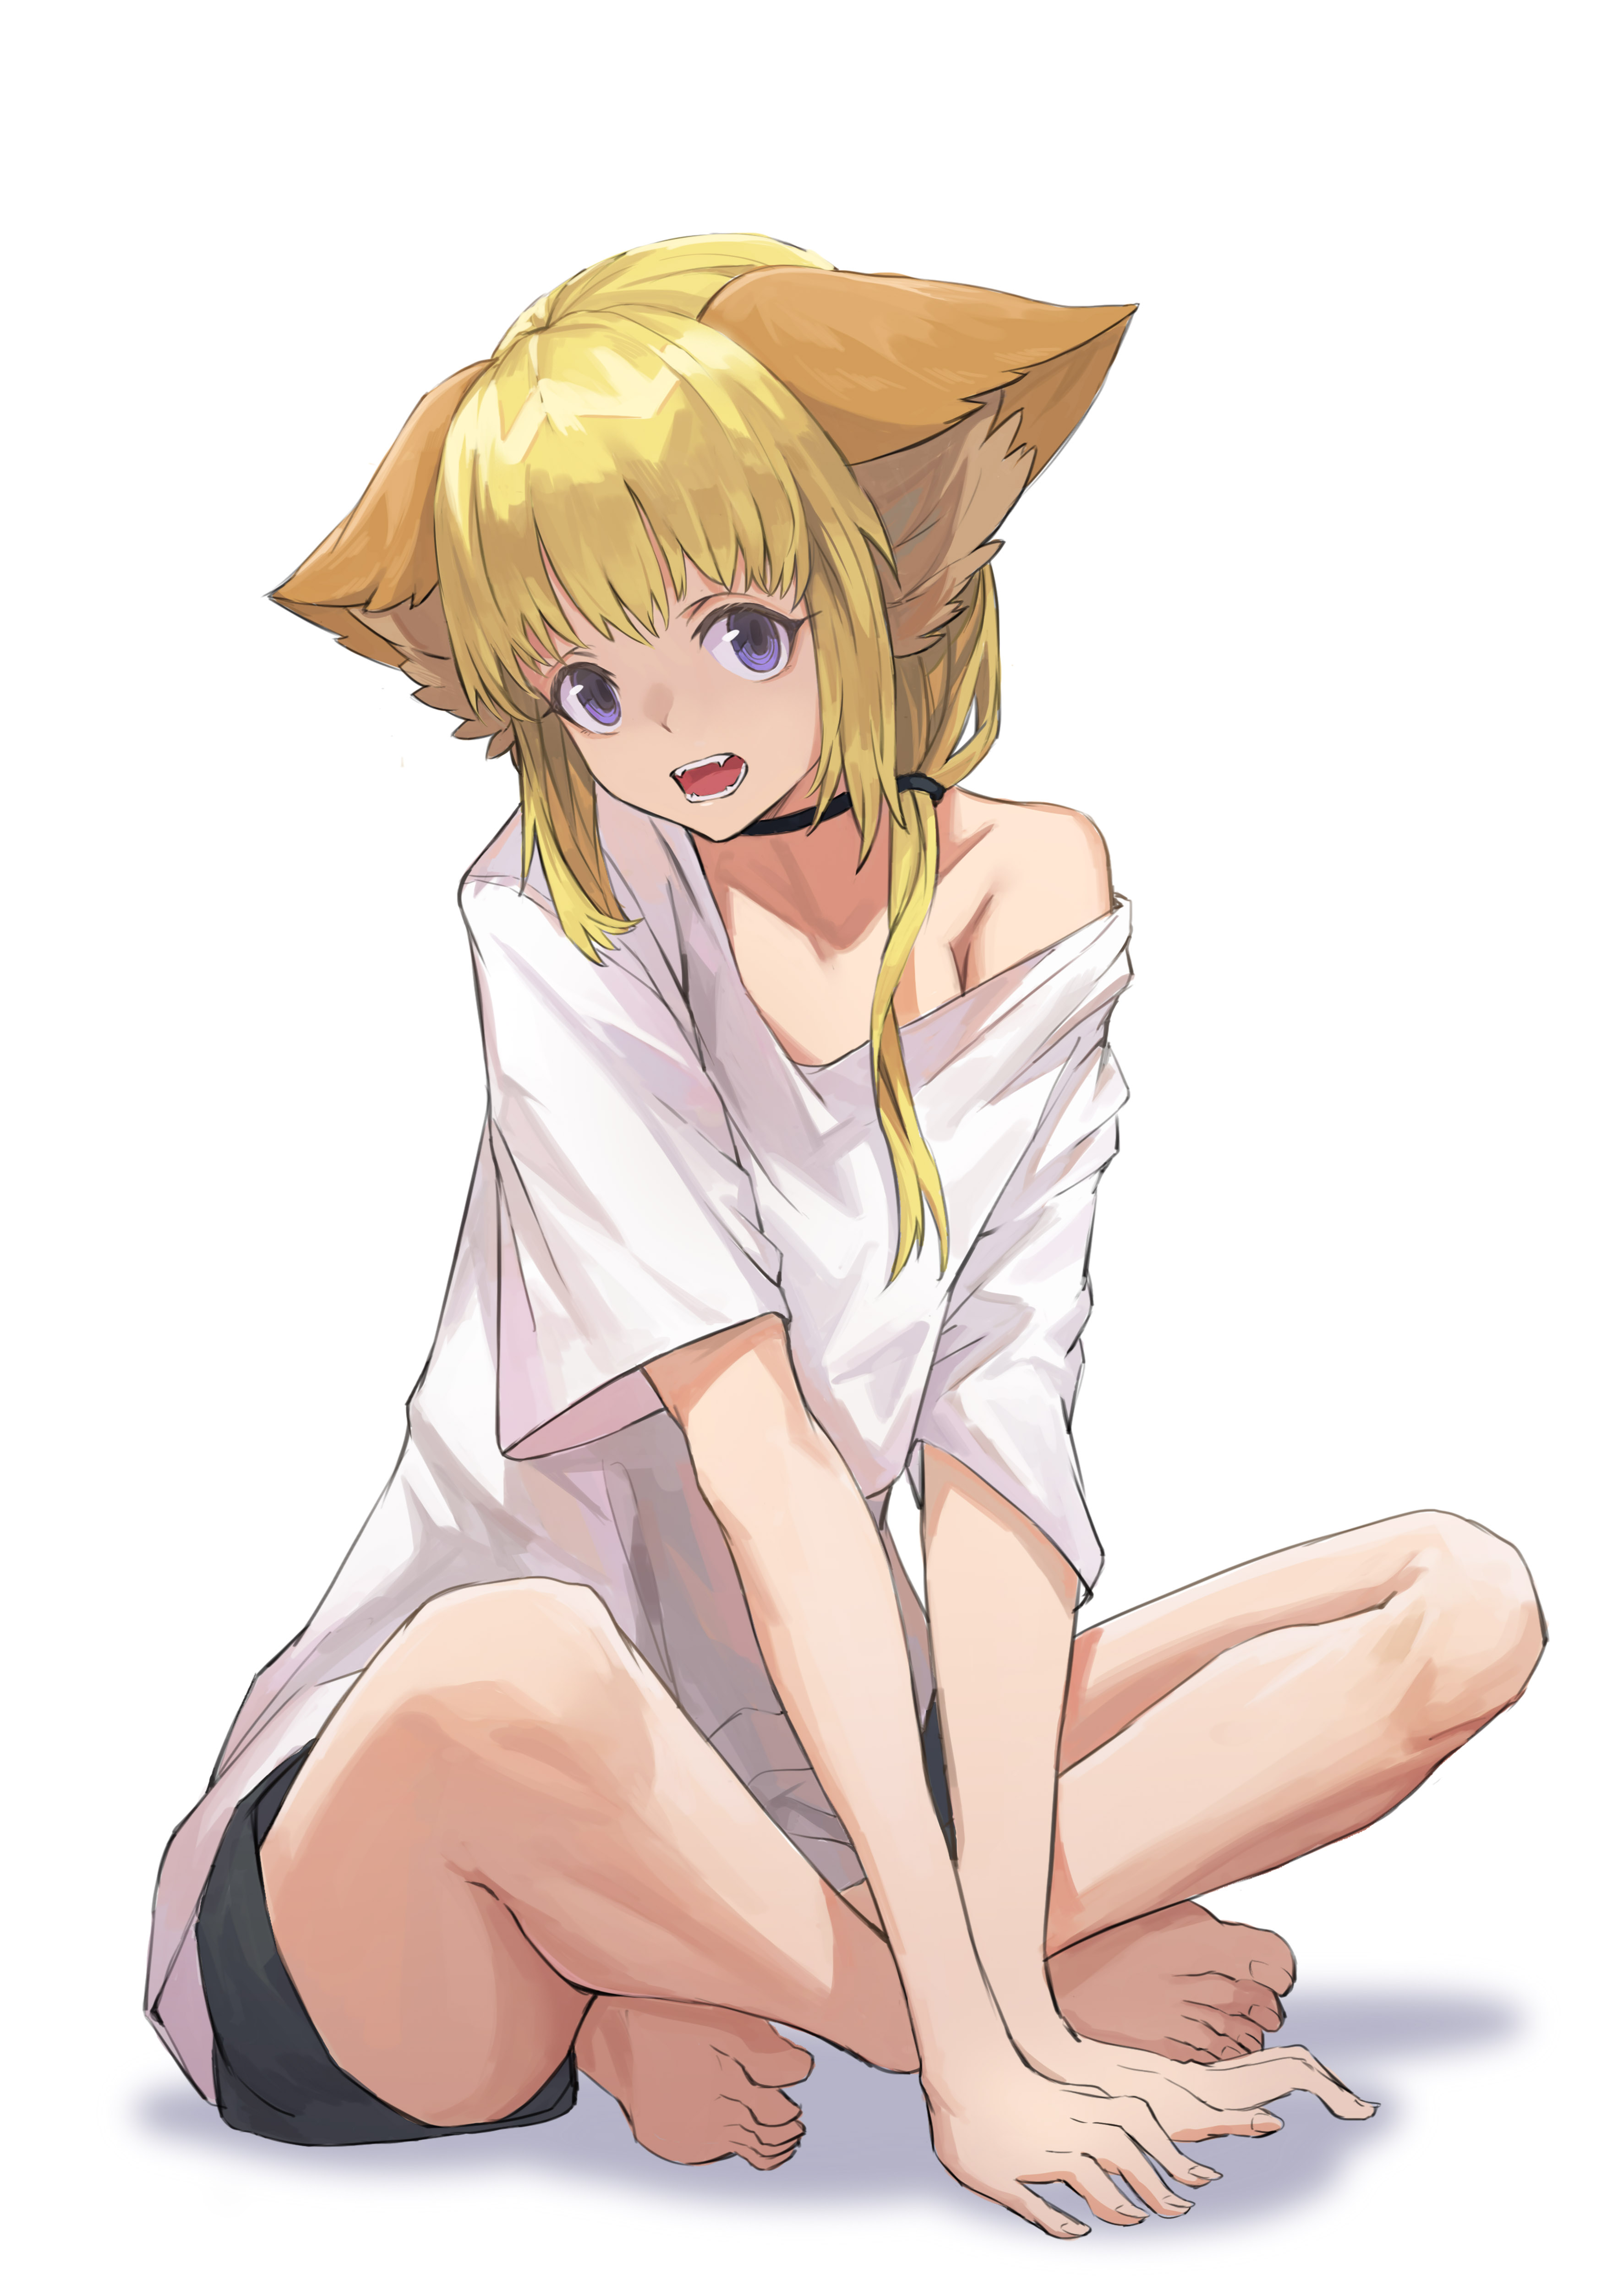 Kemono Jihen Fox Girl Blond Hair White T Shirt Barefoot Blue Eyes Anime Girls Fangs Looking At Viewe 3543x5012